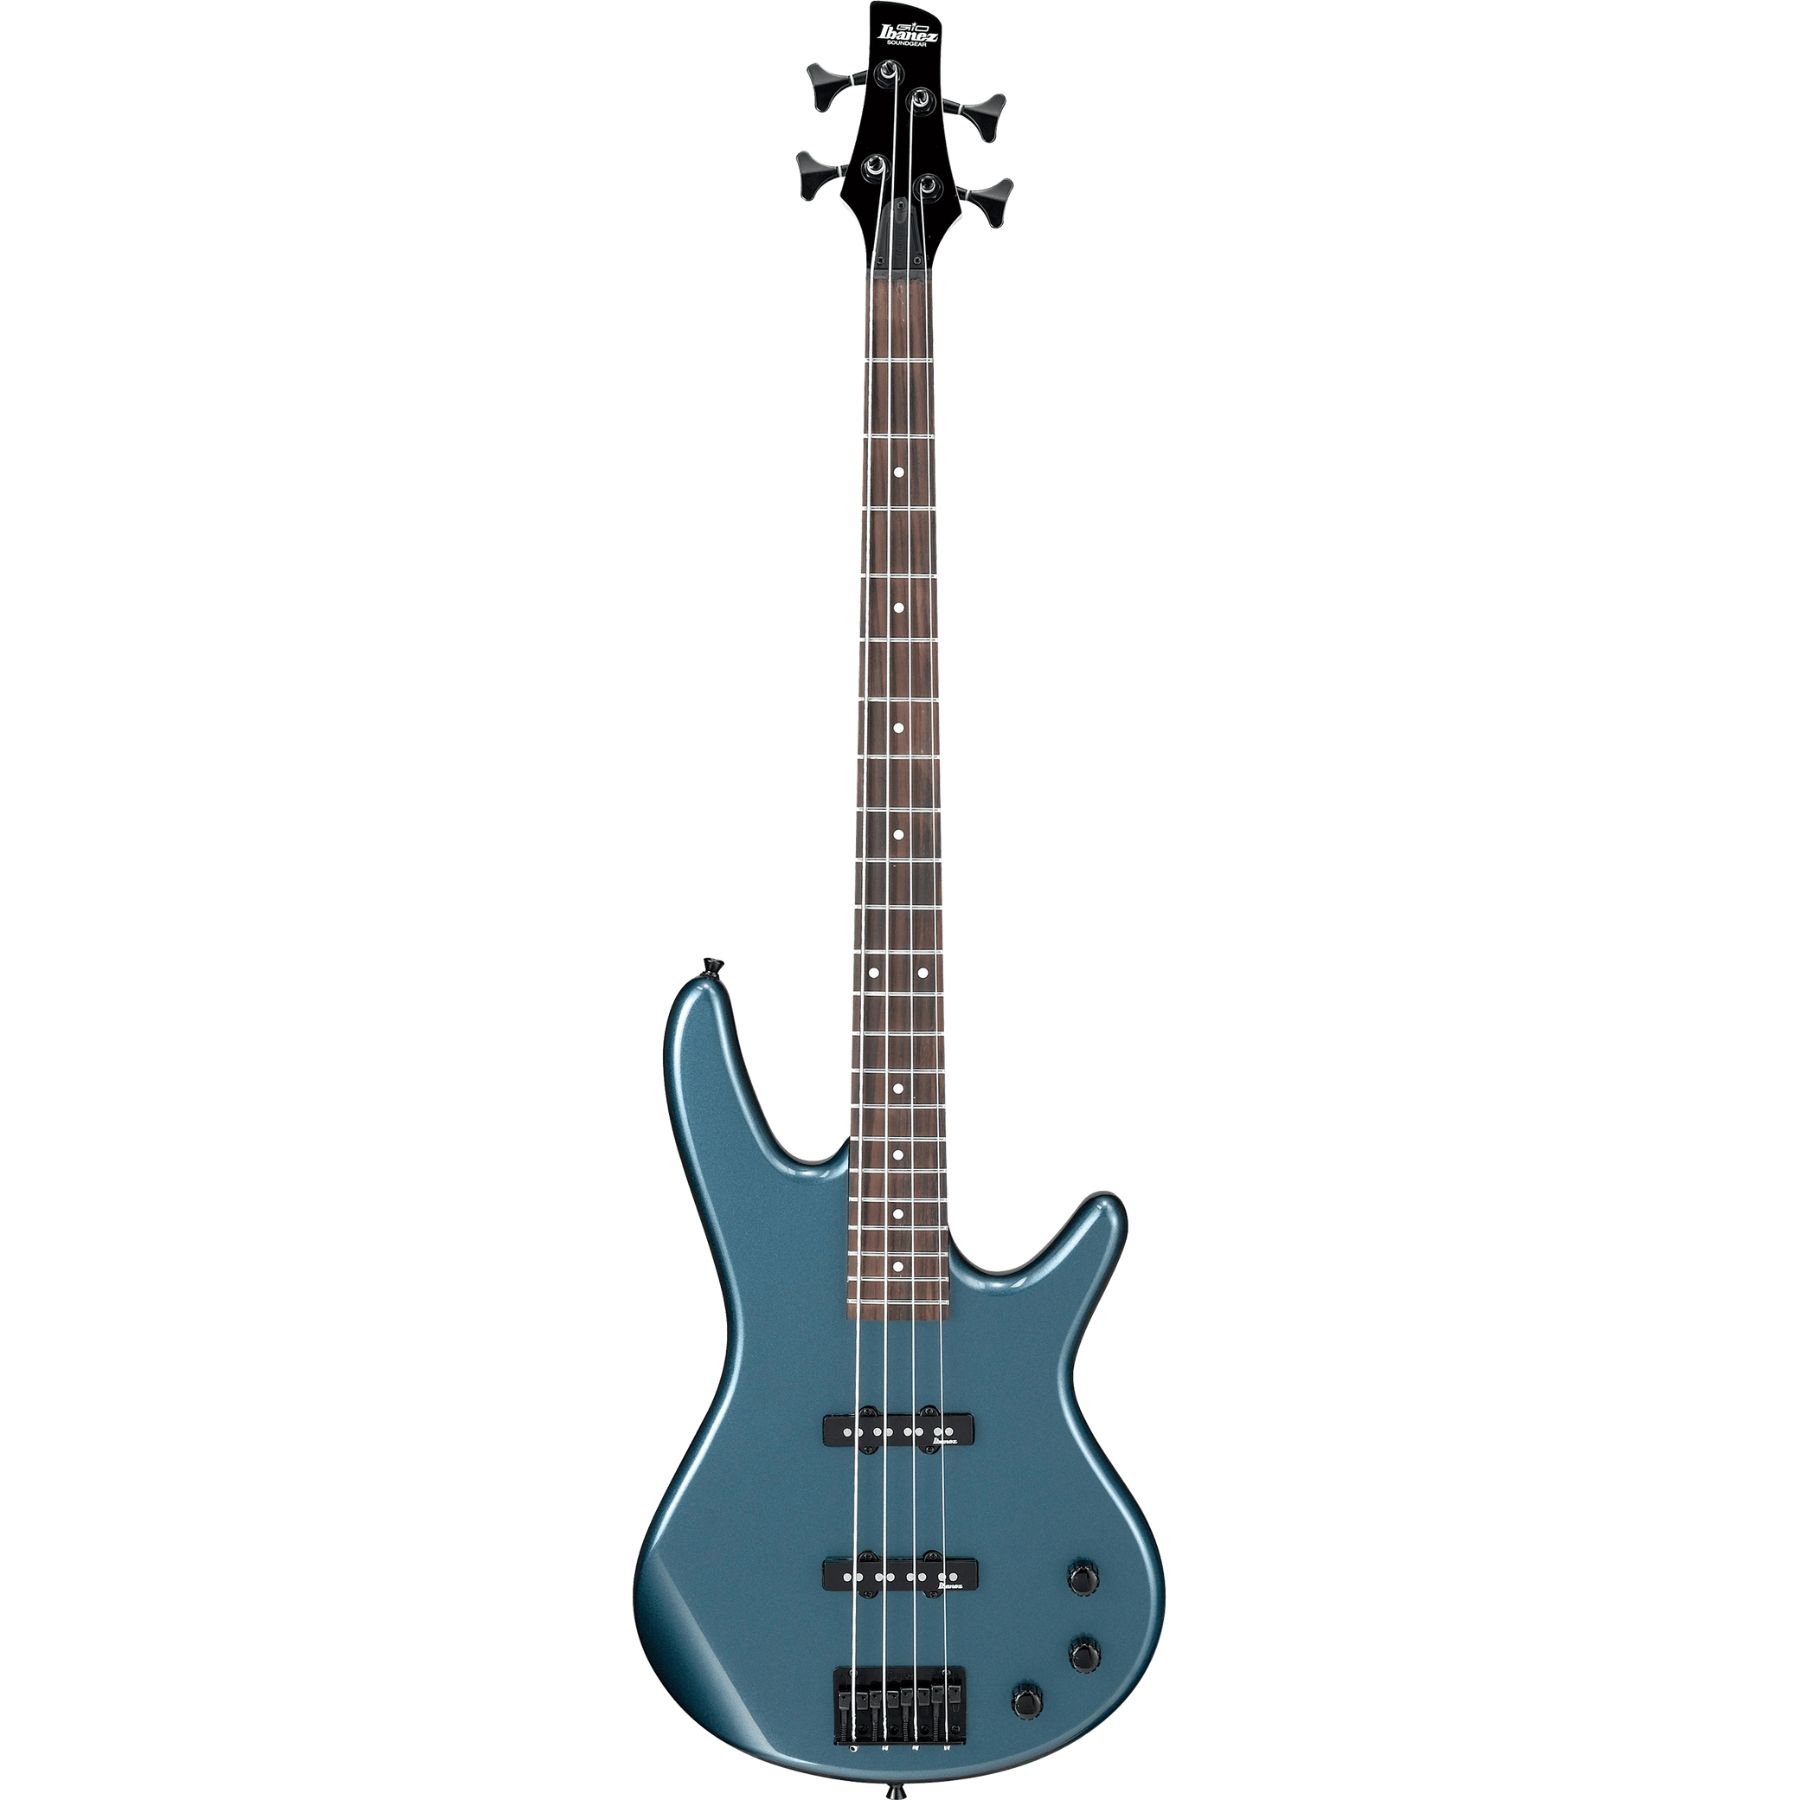 Buy Ibanez GSR320 Bass Guitar online in India